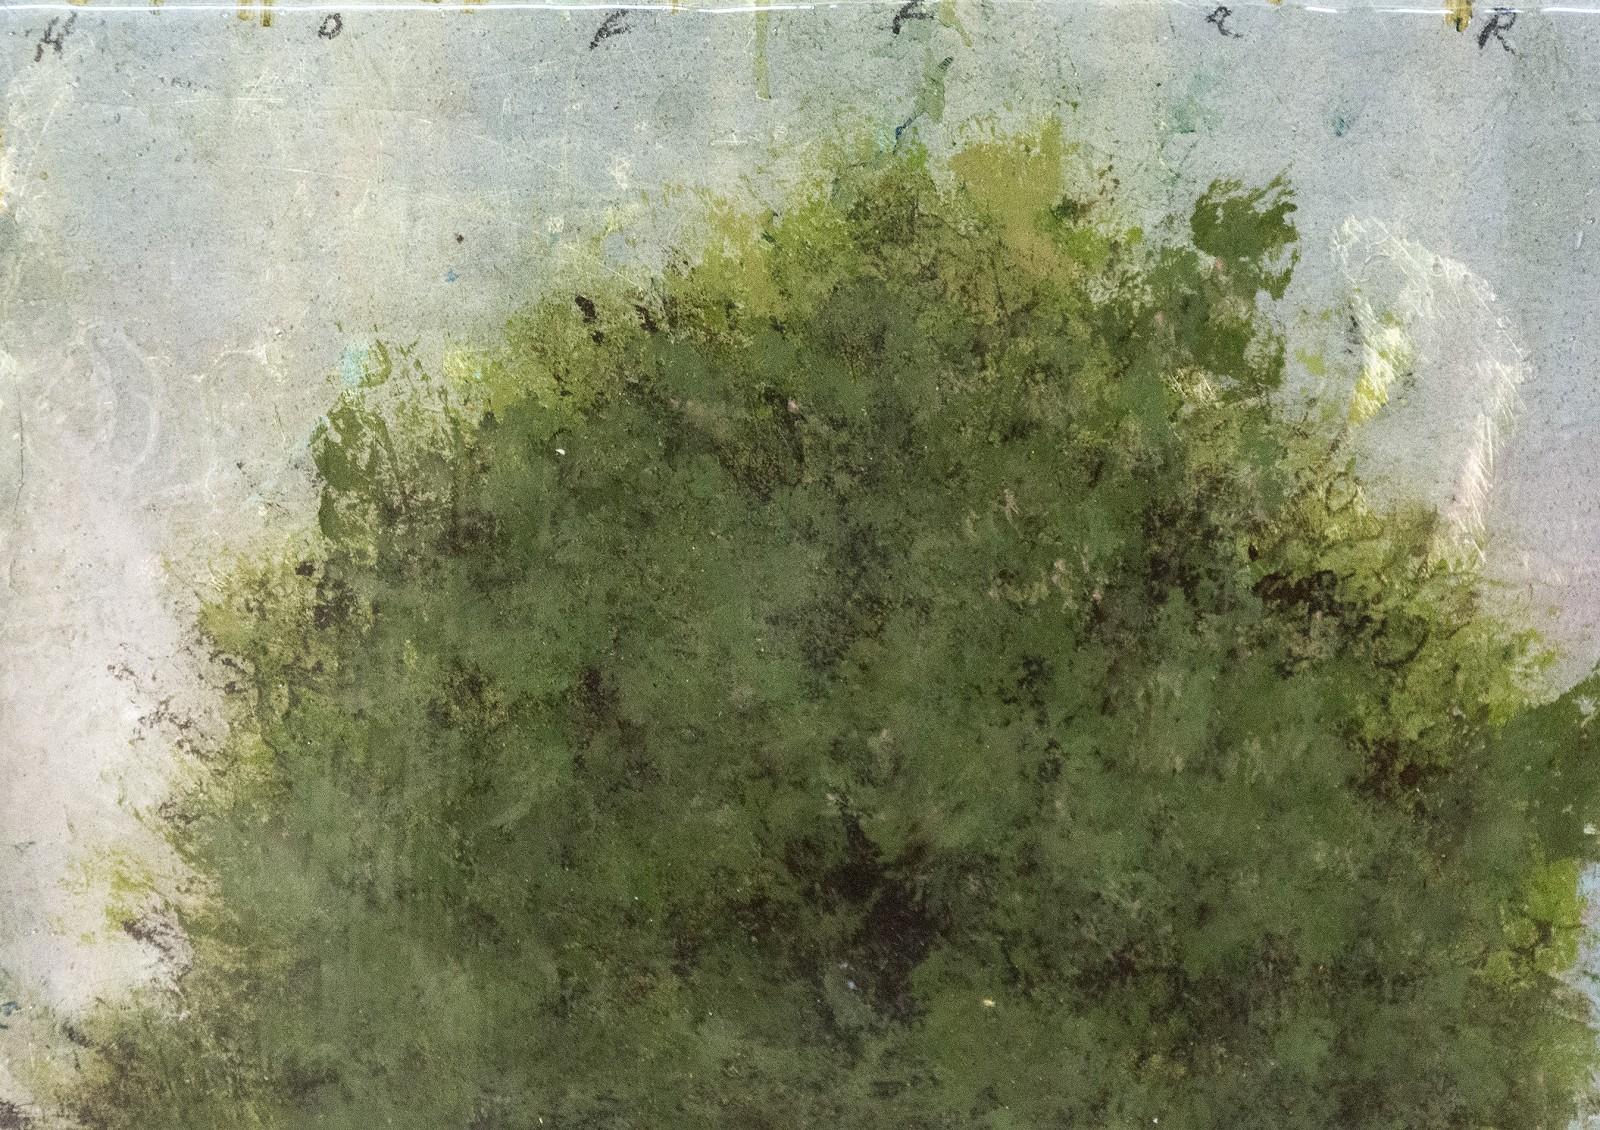 Peter Hoffer ist bekannt für seine romantischen, eleganten Landschaften, die an Künstler wie John Constable erinnern. Es handelt sich um eine Serie von 12 stimmungsvollen Porträts einzelner Laubbäume vor einem pastellfarbenen Himmel, wobei jeder